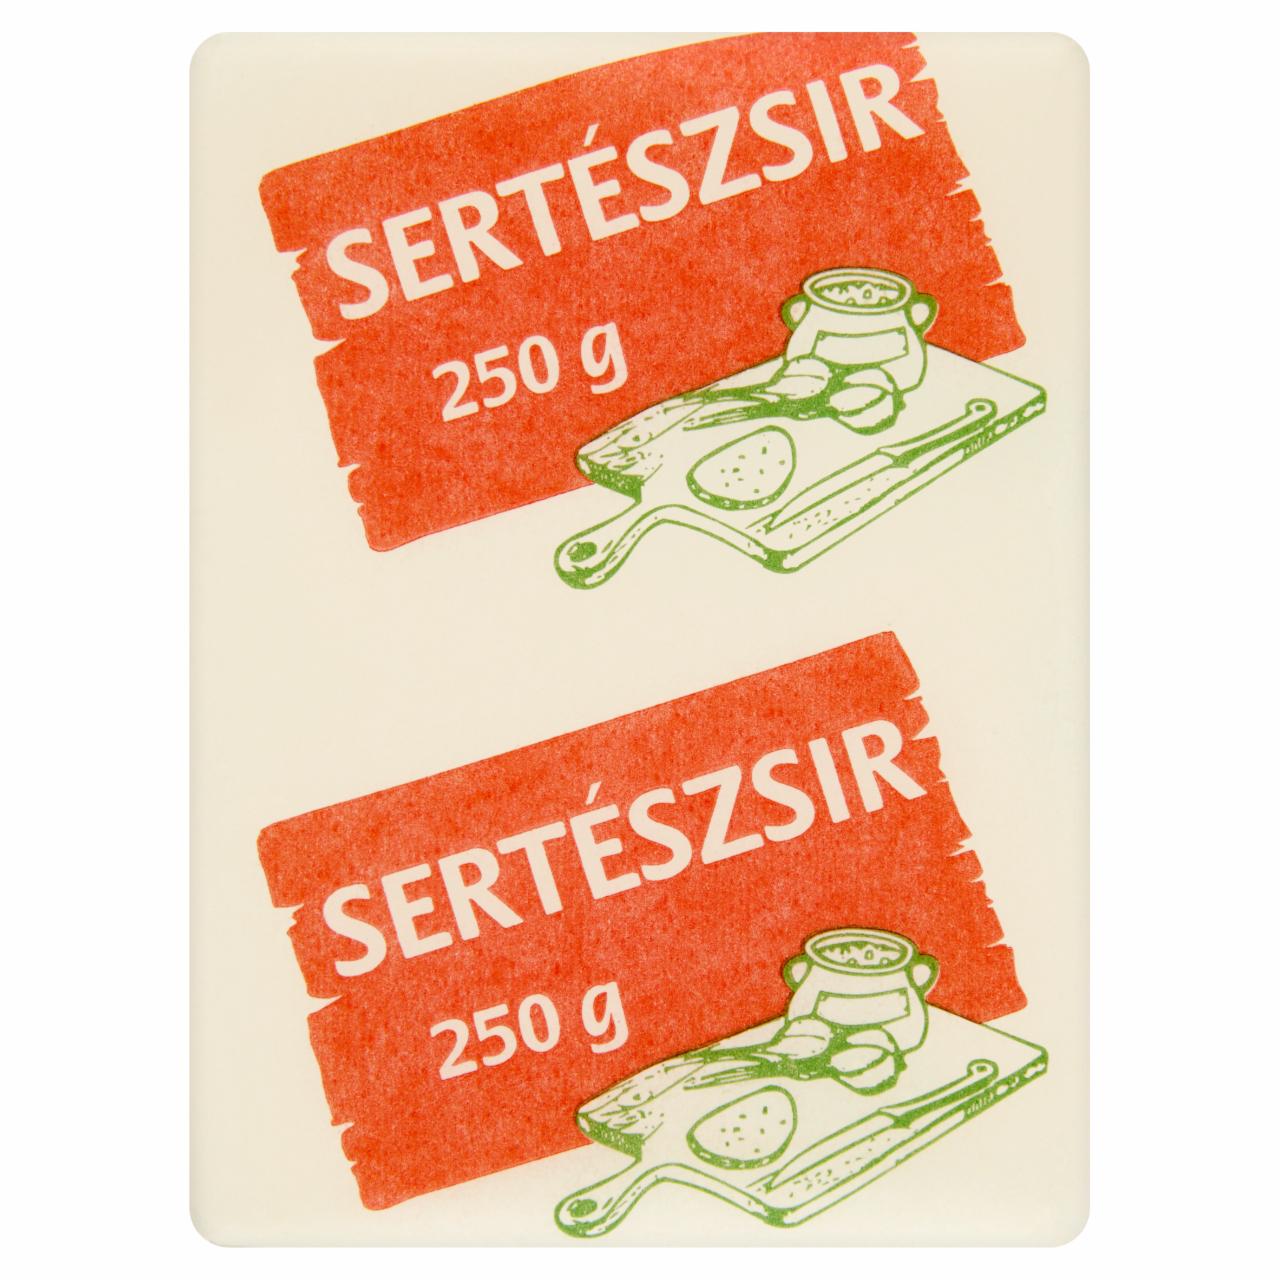 Képek - Sertészsír 250 g